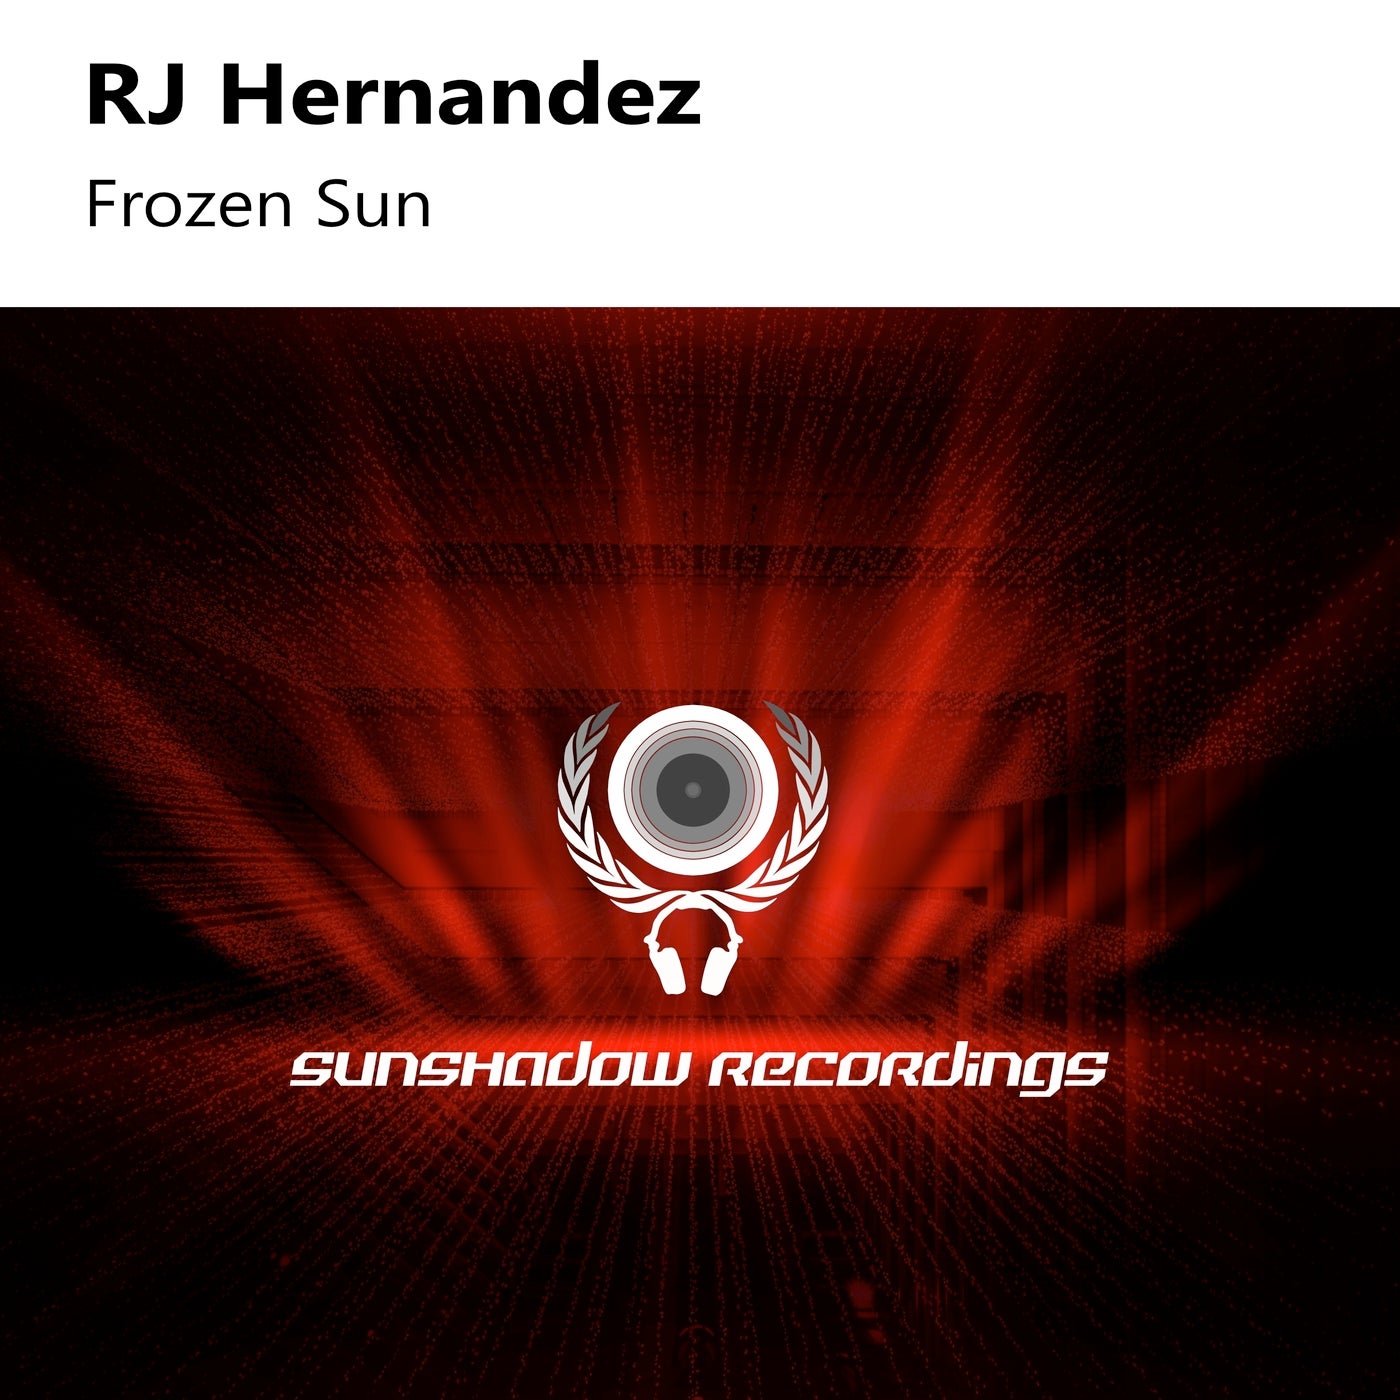 Frozen Sun (Extended Mix)